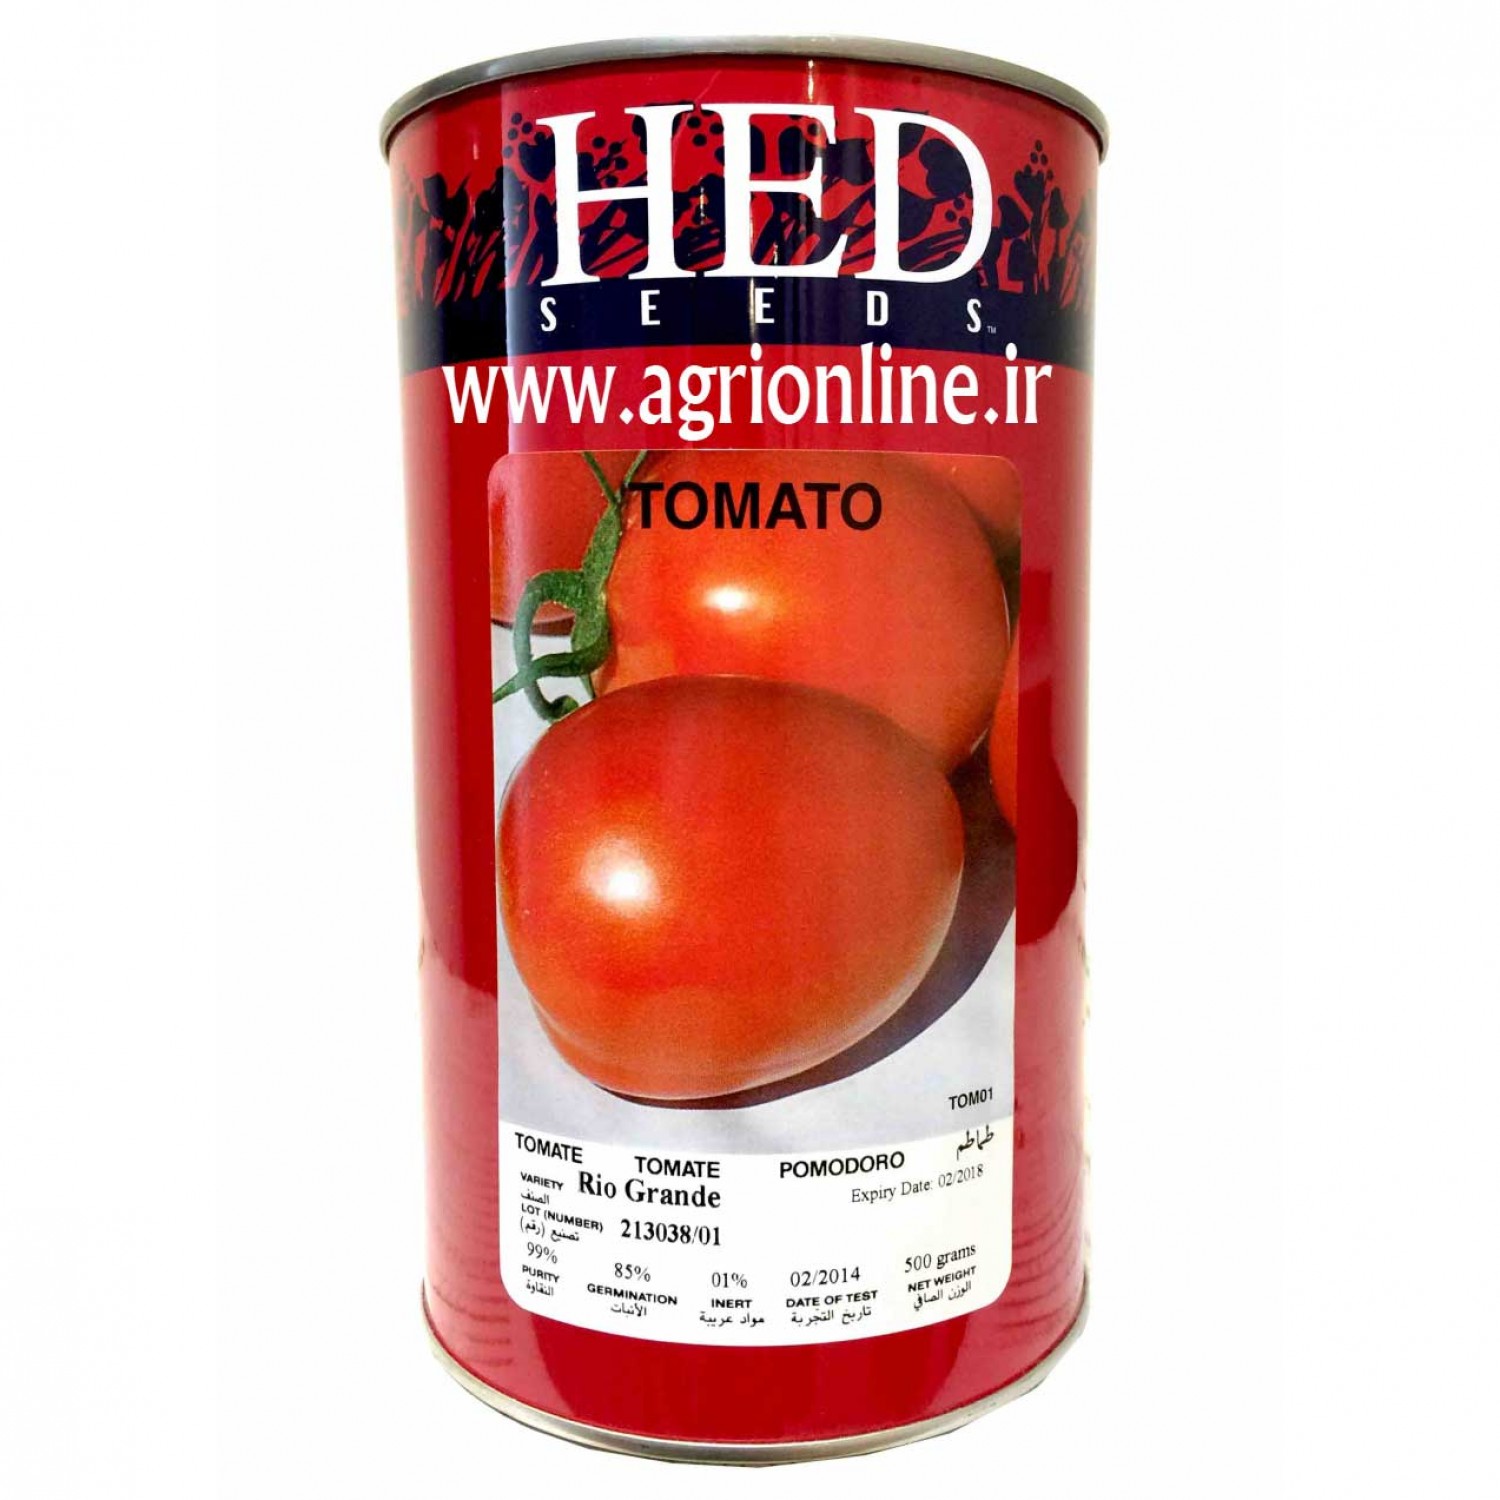 بذر گوجه فرنگی ریو گراند اچ ای دی -Riogrande HED 